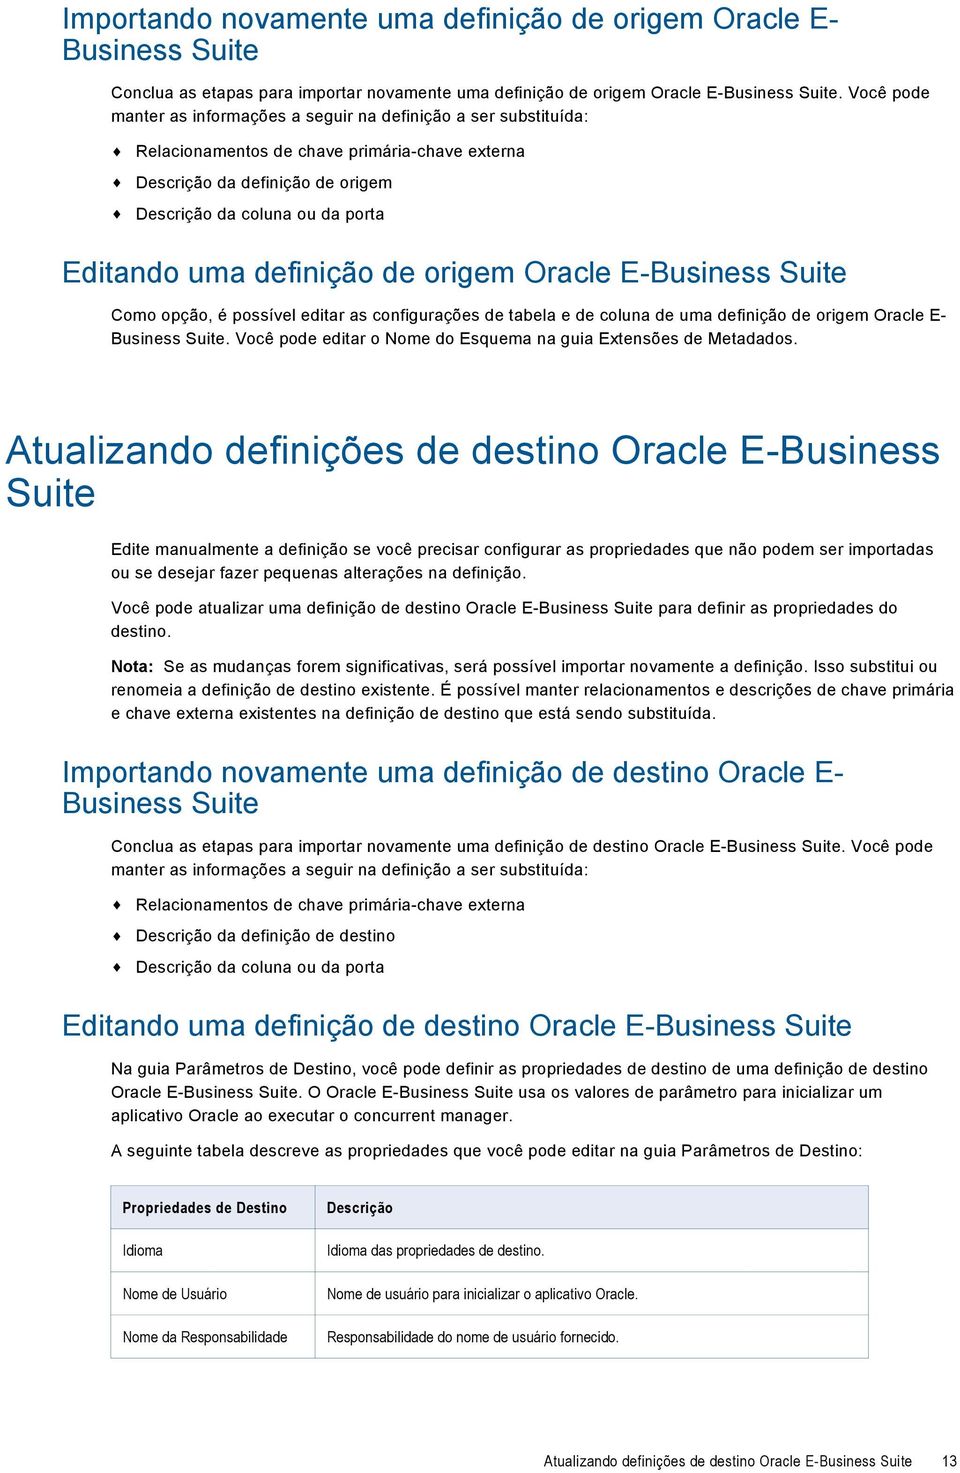 definição de origem Oracle E-Business Suite Como opção, é possível editar as configurações de tabela e de coluna de uma definição de origem Oracle E- Business Suite.